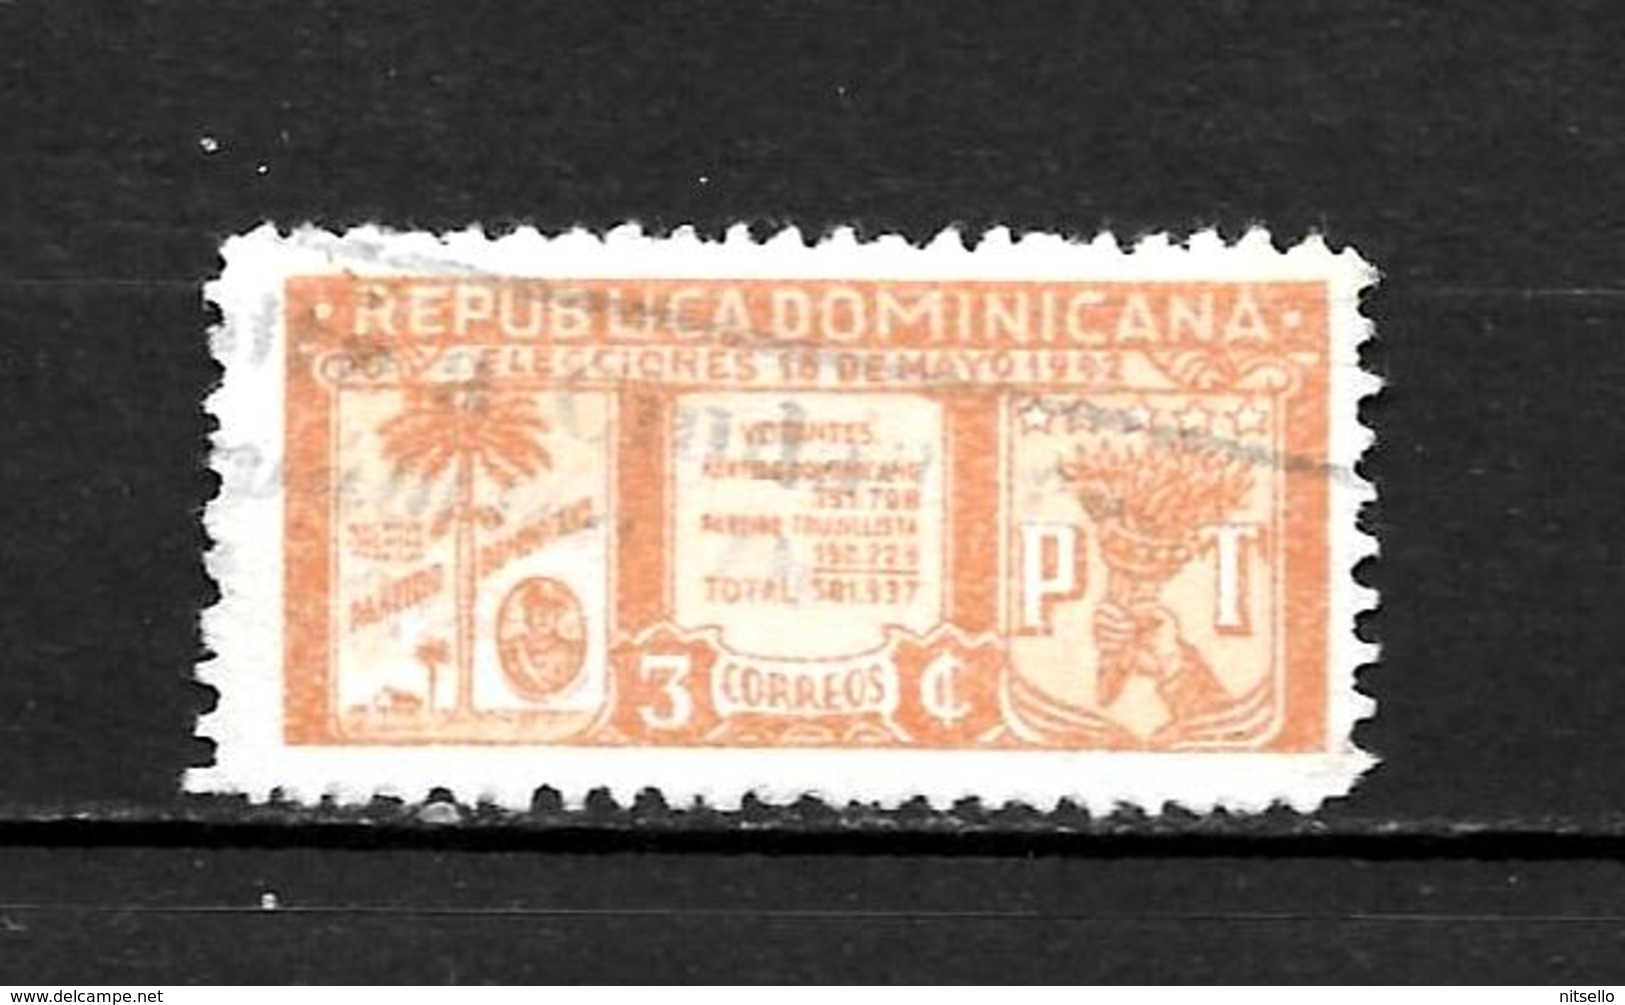 LOTE 1993  ///    REPUBLICA DOMINICANA     ¡¡¡ OFERTA - LIQUIDATION !!! JE LIQUIDE !!! - Dominican Republic